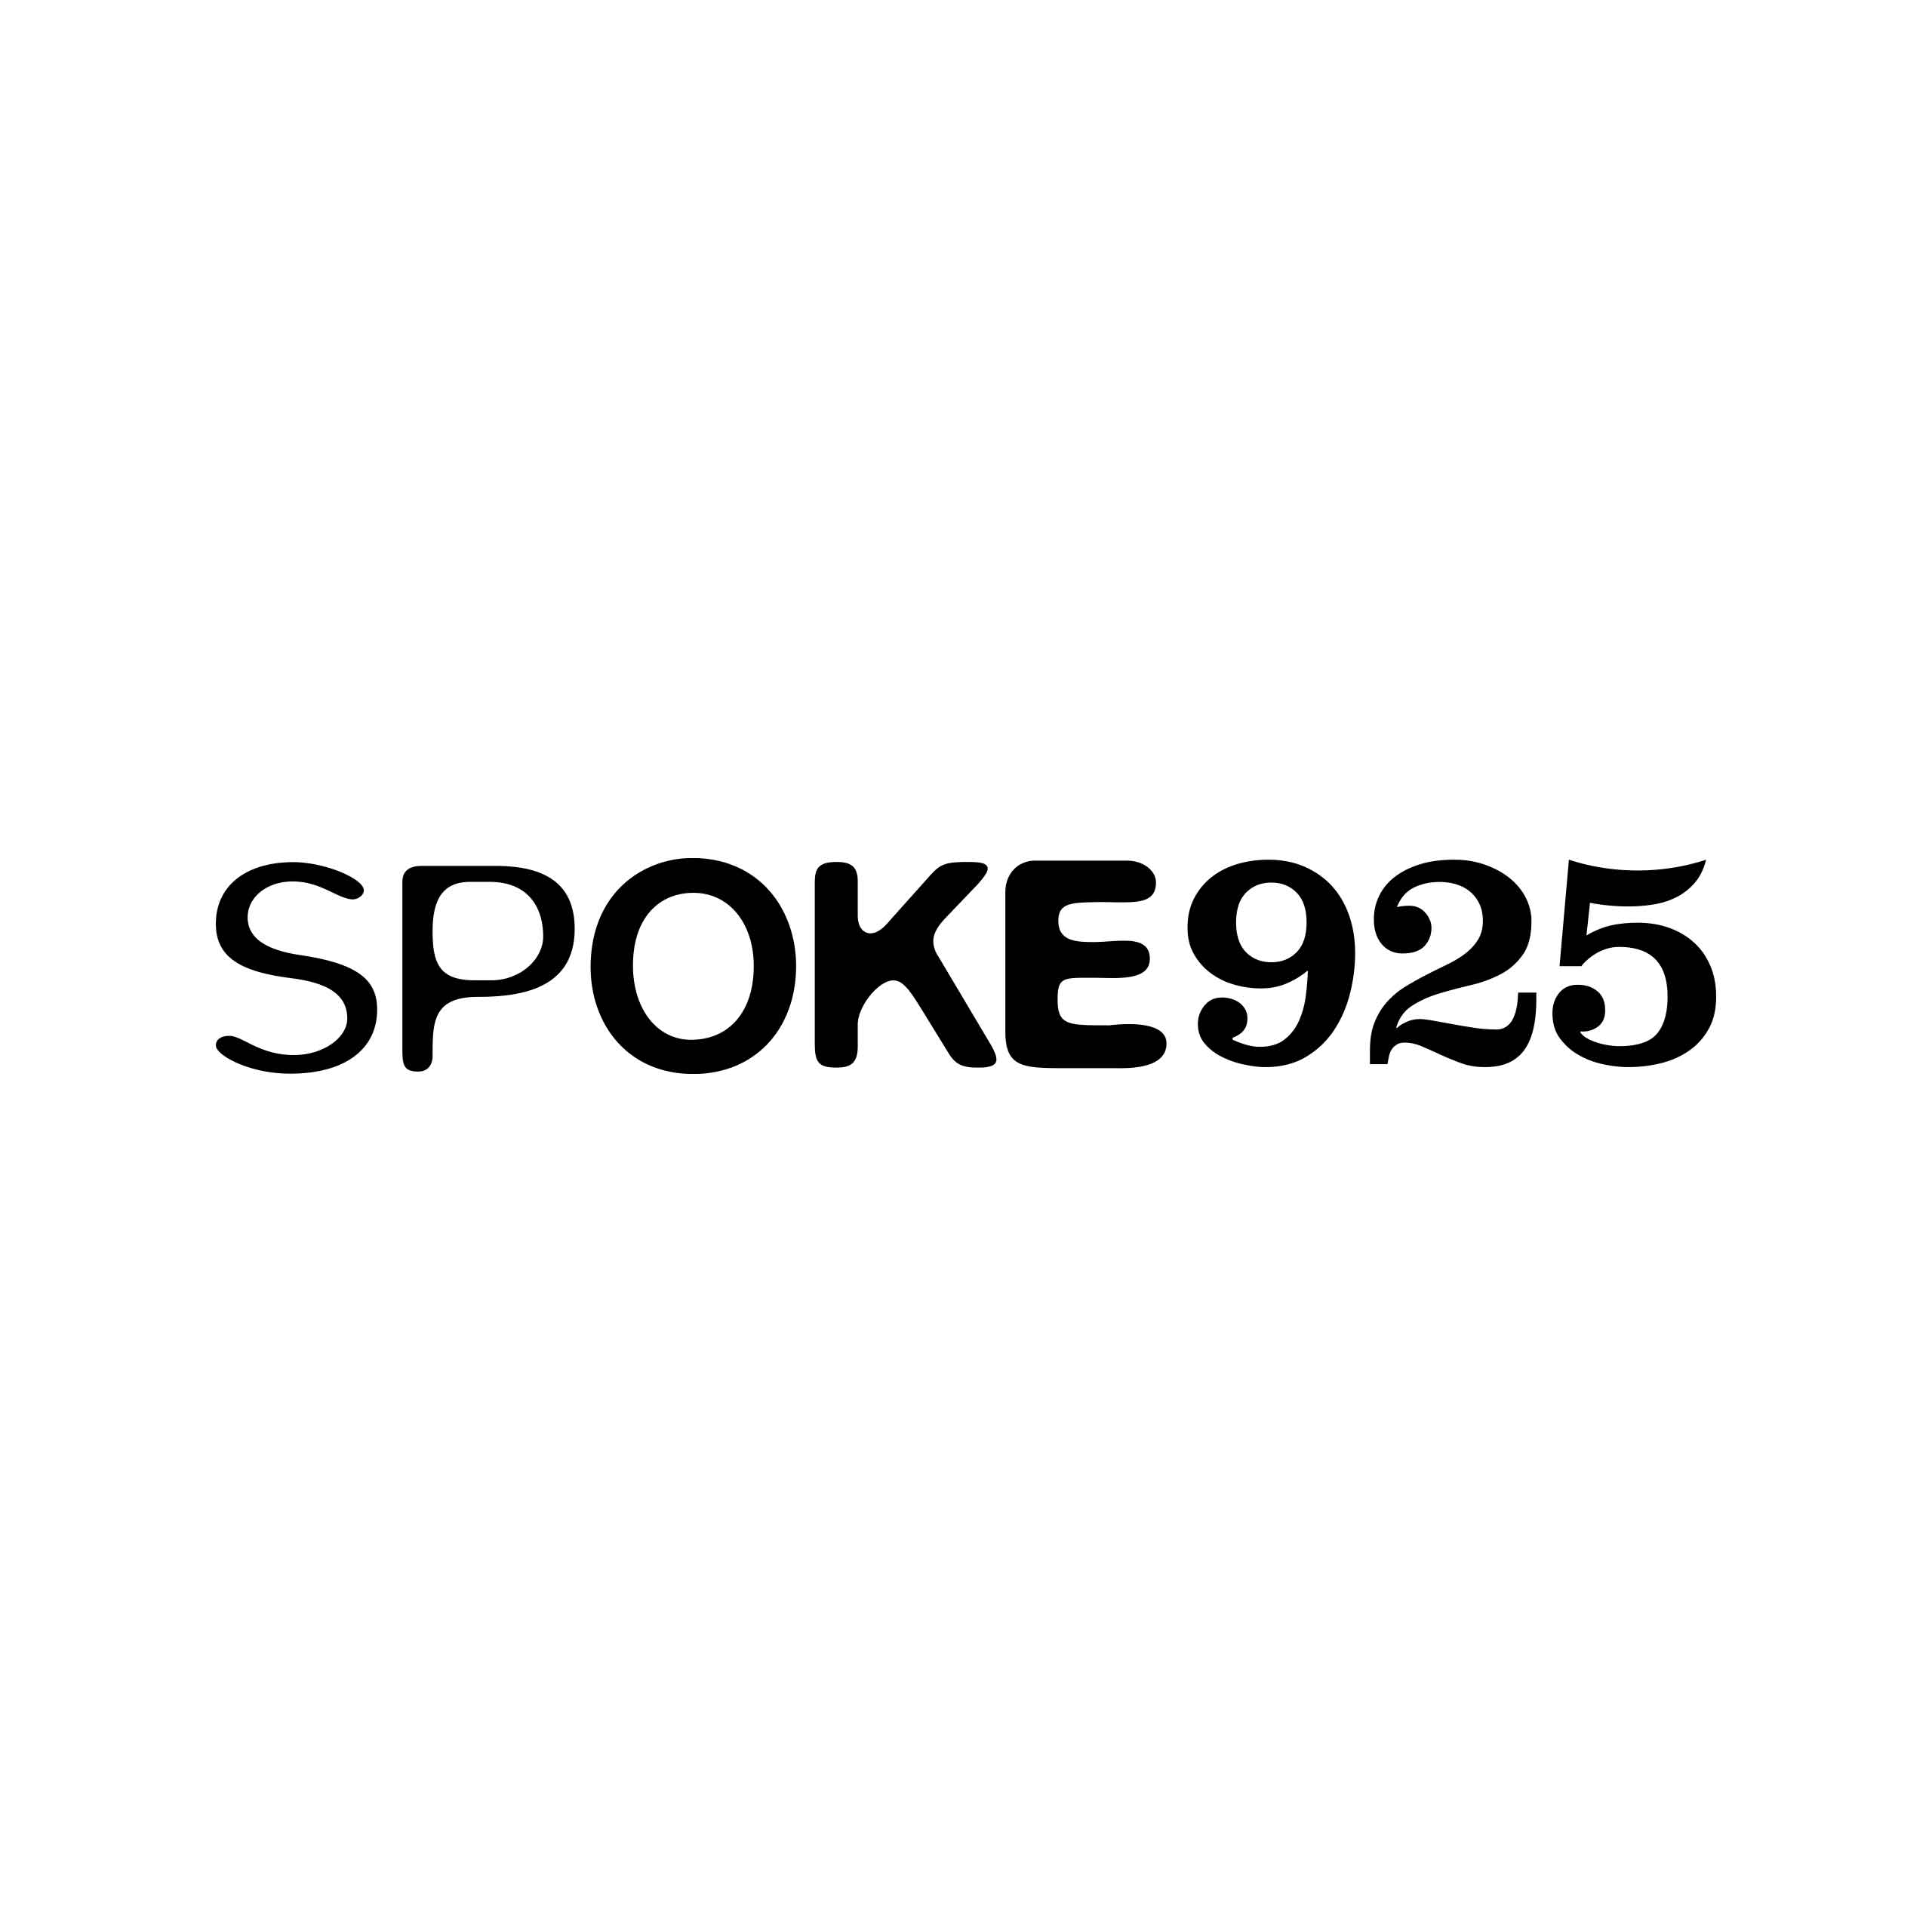 spoke925 logo